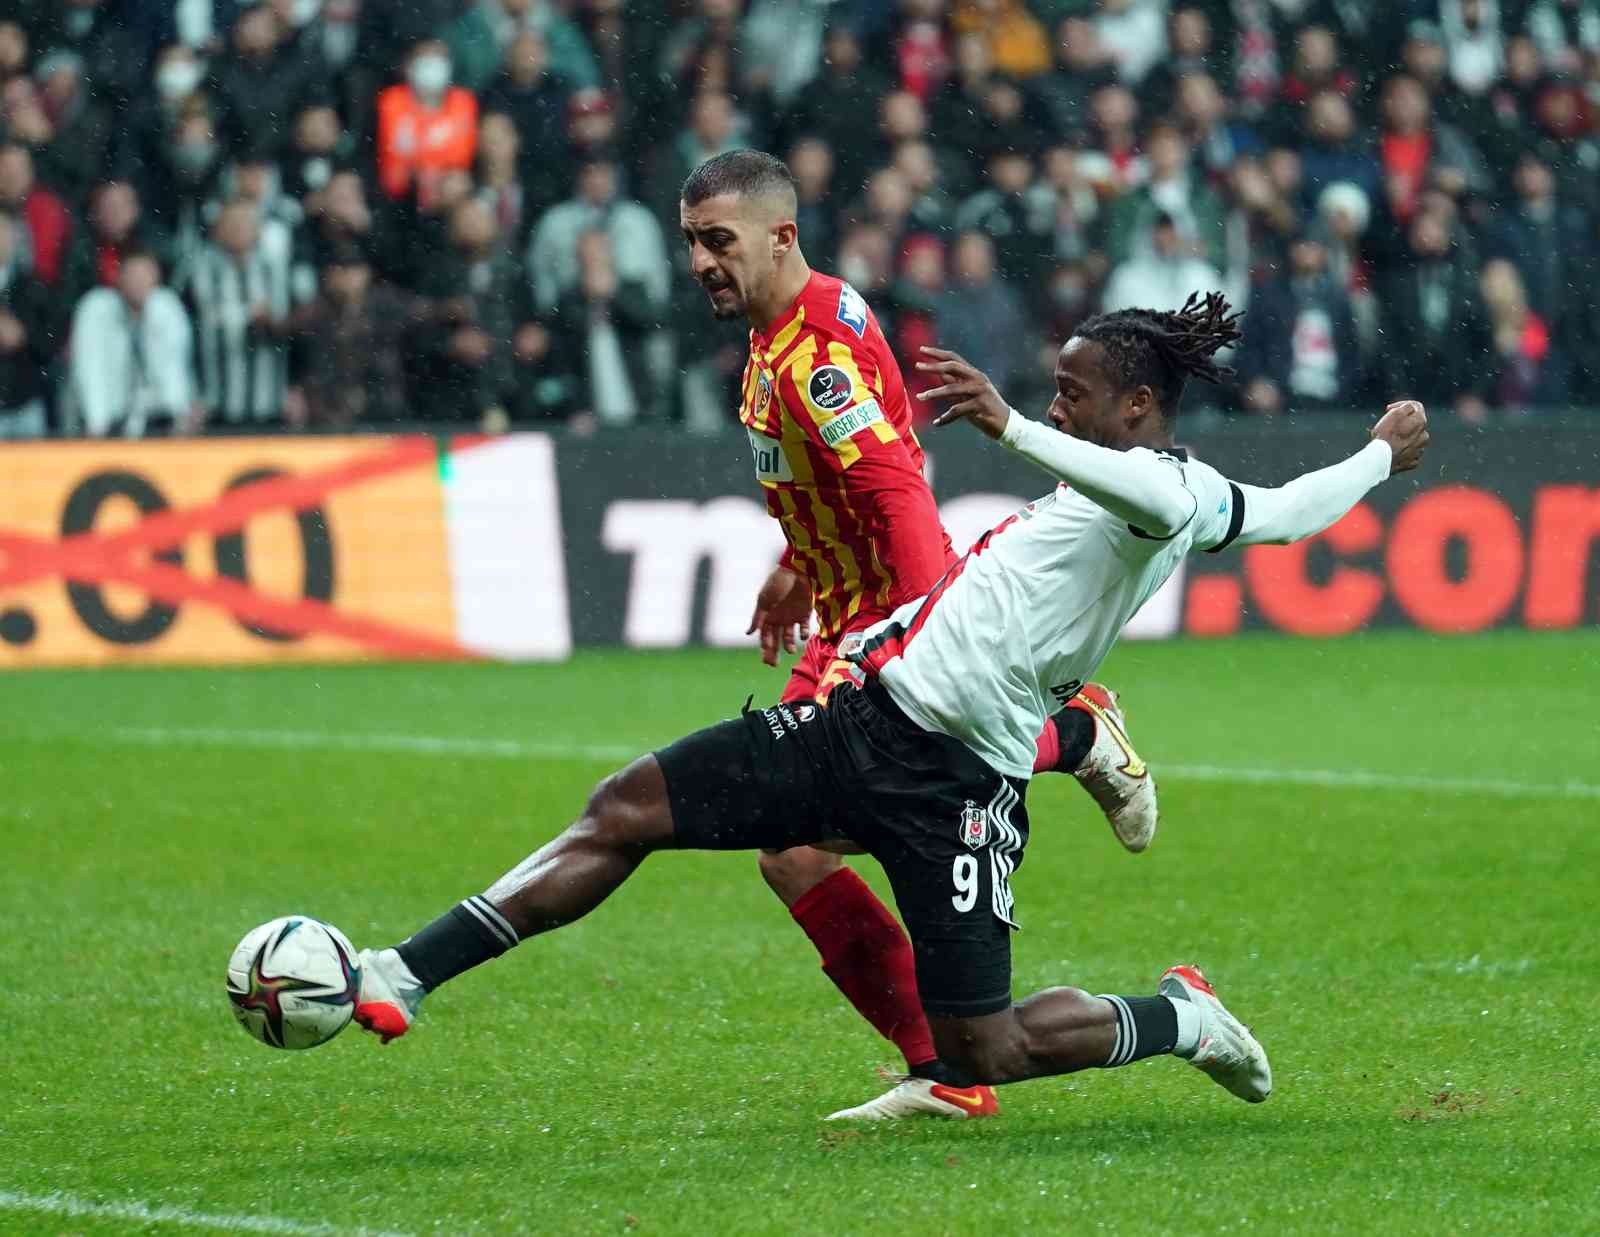 Spor Toto Süper Lig: Beşiktaş: 4 - Kayserispor: 2 (Maç sonucu) #istanbul